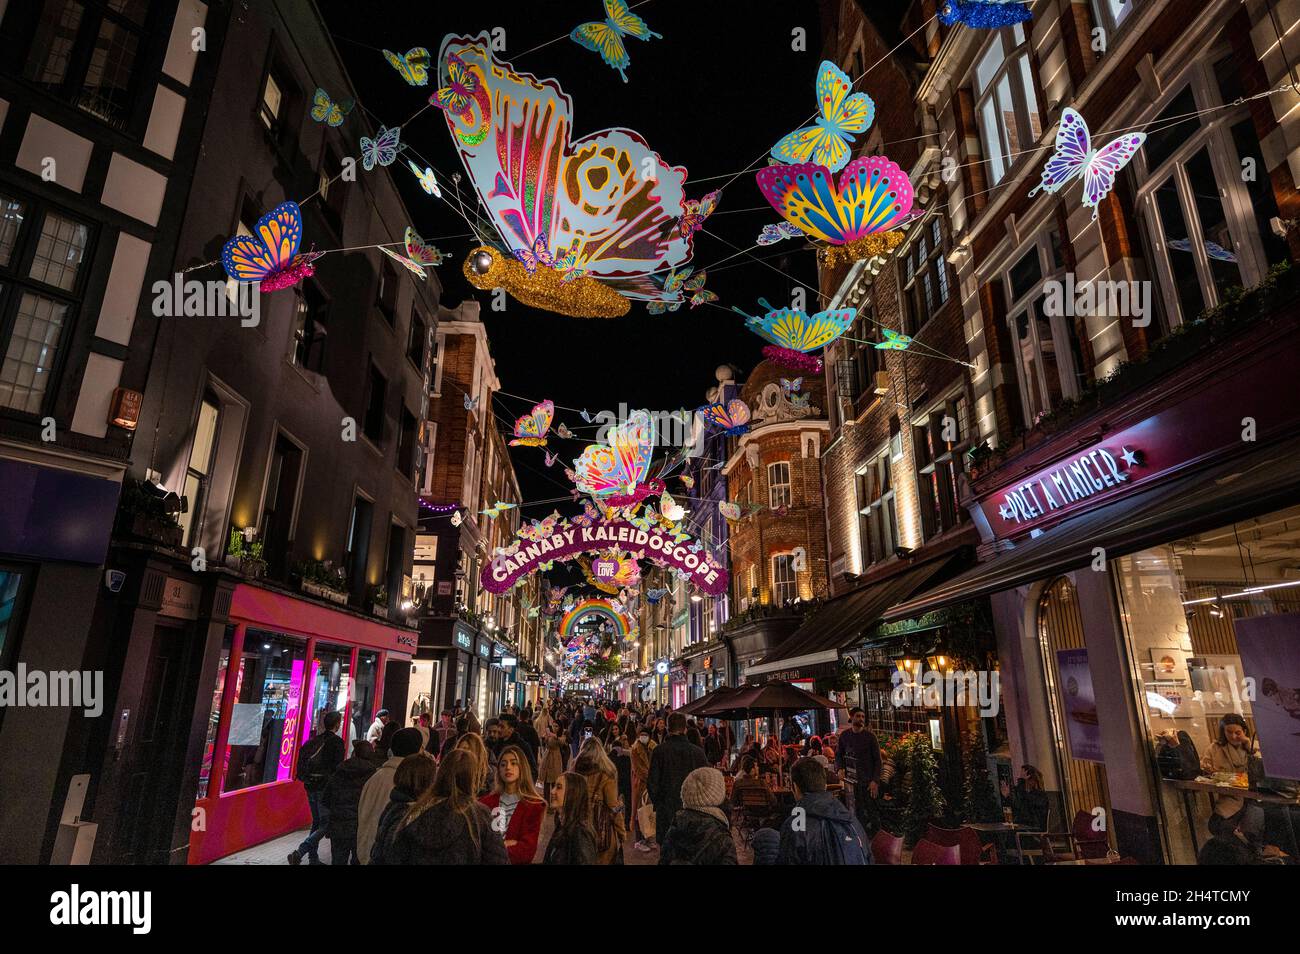 Facturable intelectual Mansedumbre Londres, Reino Unido. 4 de noviembre de 2021. Las luces de Navidad en  Carnaby Street se han encendido. El tema de este año es Carnaby  Caleidoscope, con una serie de mariposas multicolores